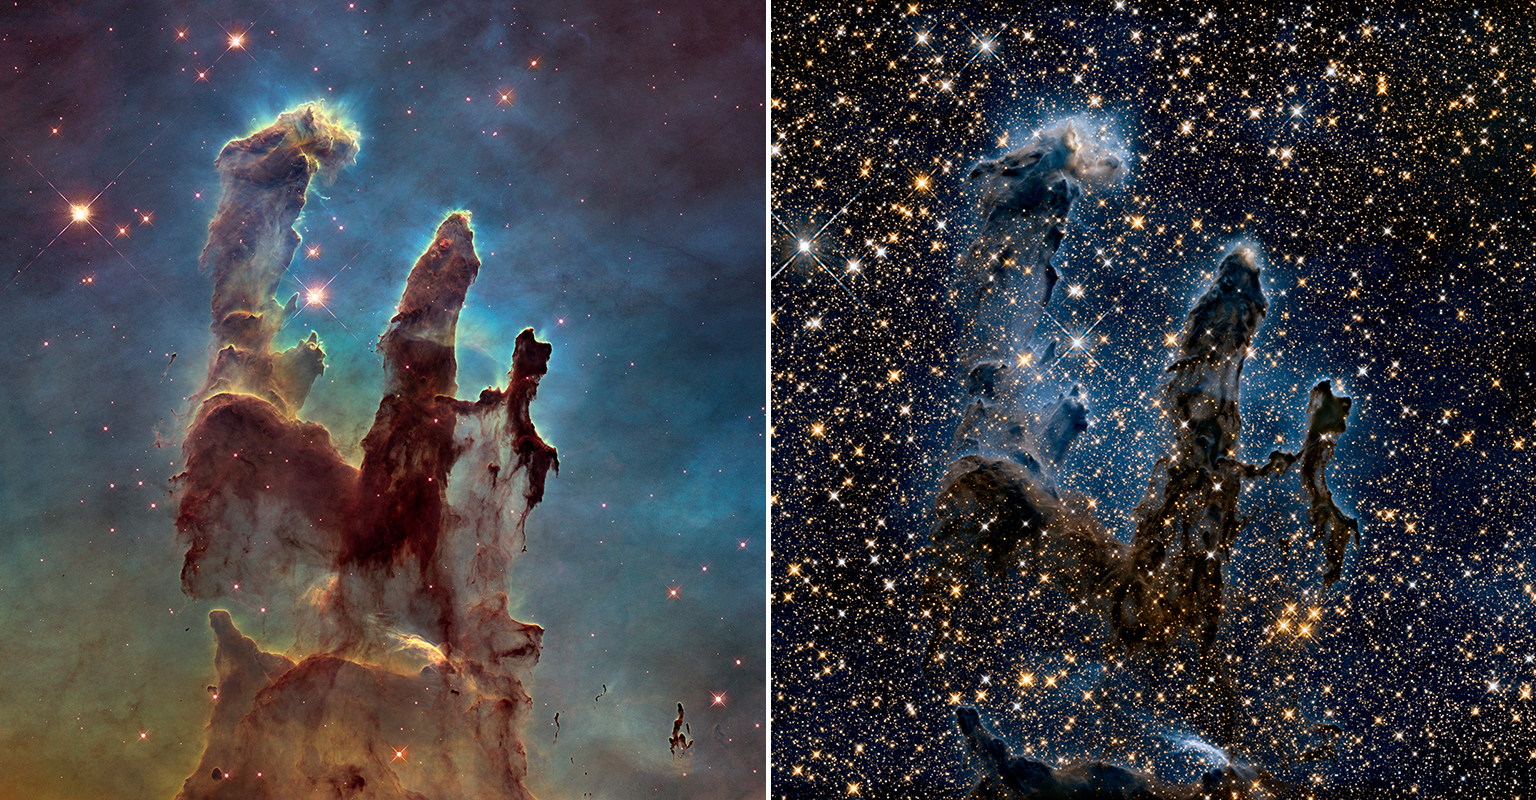 Os Pilares da Criação revisitados. À direita imagem em infravermelho dos pilares na Nebulosa da Águia.